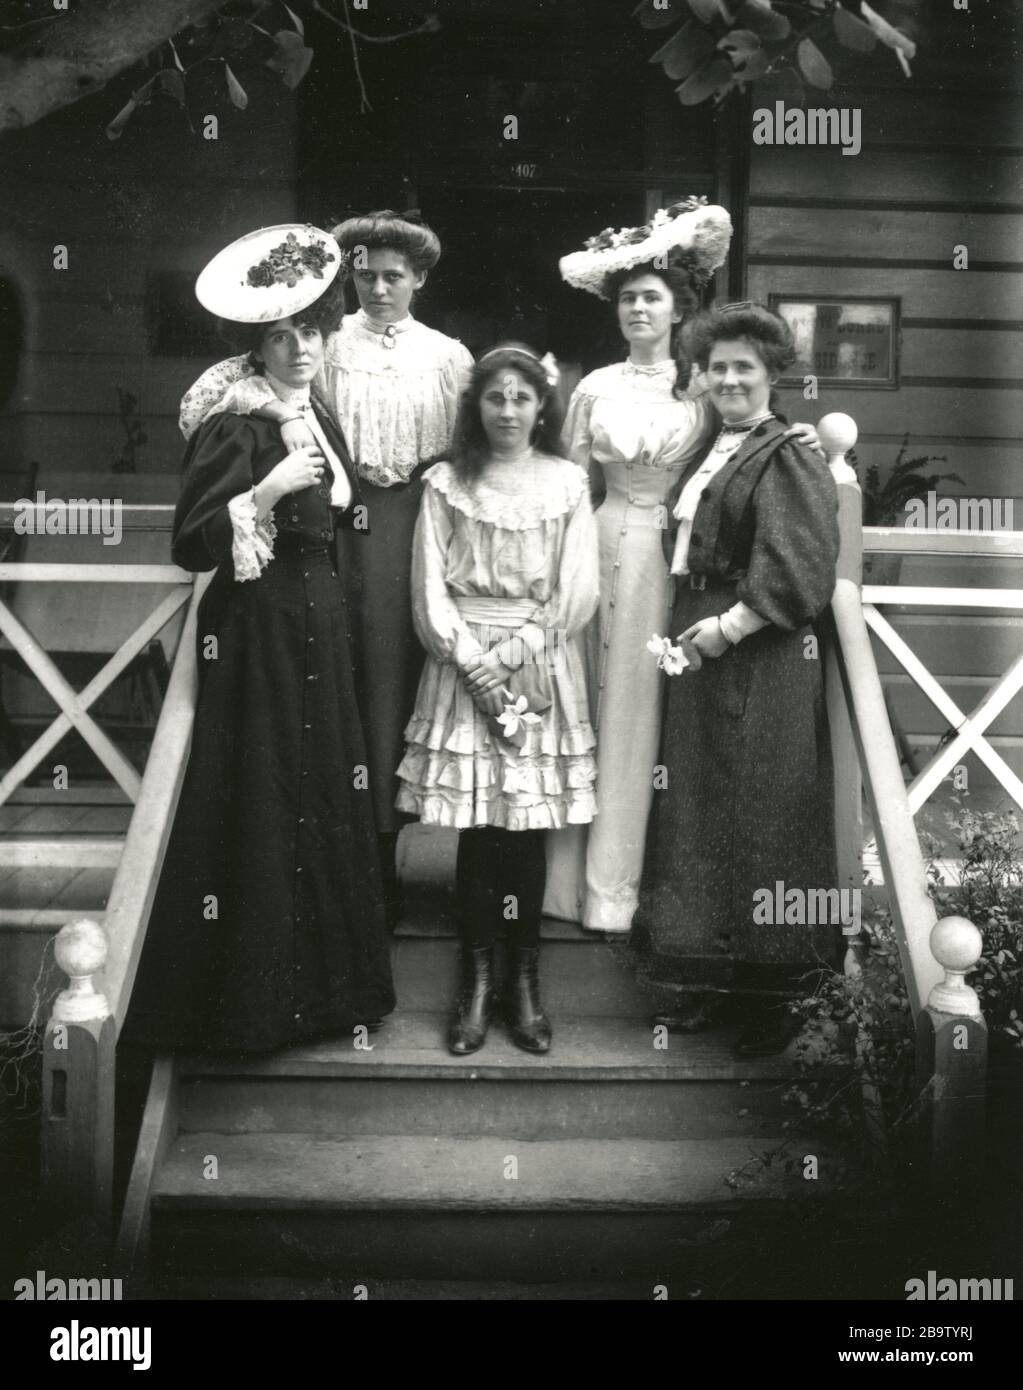 Englisch: Modische Damen des Tages große Hüte und lange Kleider waren die  ganze Mode für Frauen in den 1900er Jahren. Knöchel wurden nur selten  gesehen. Während des Krieges führten die Grenzen der